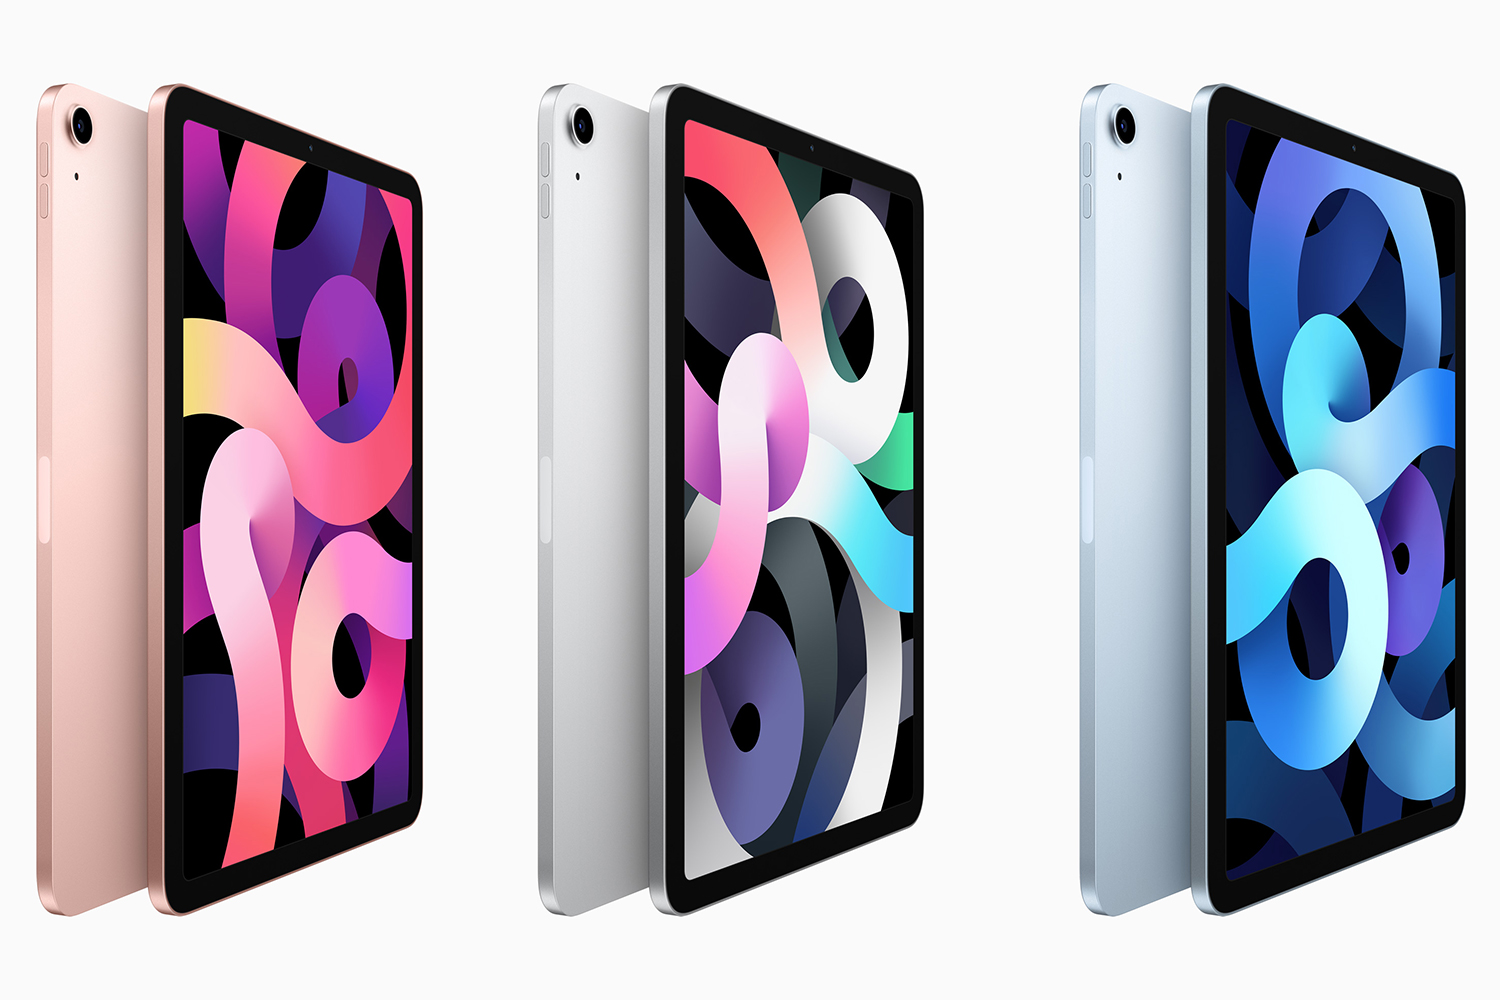 سه مدل آيپد اير 2020 / iPad Air از نيم رخ با سه رنگ